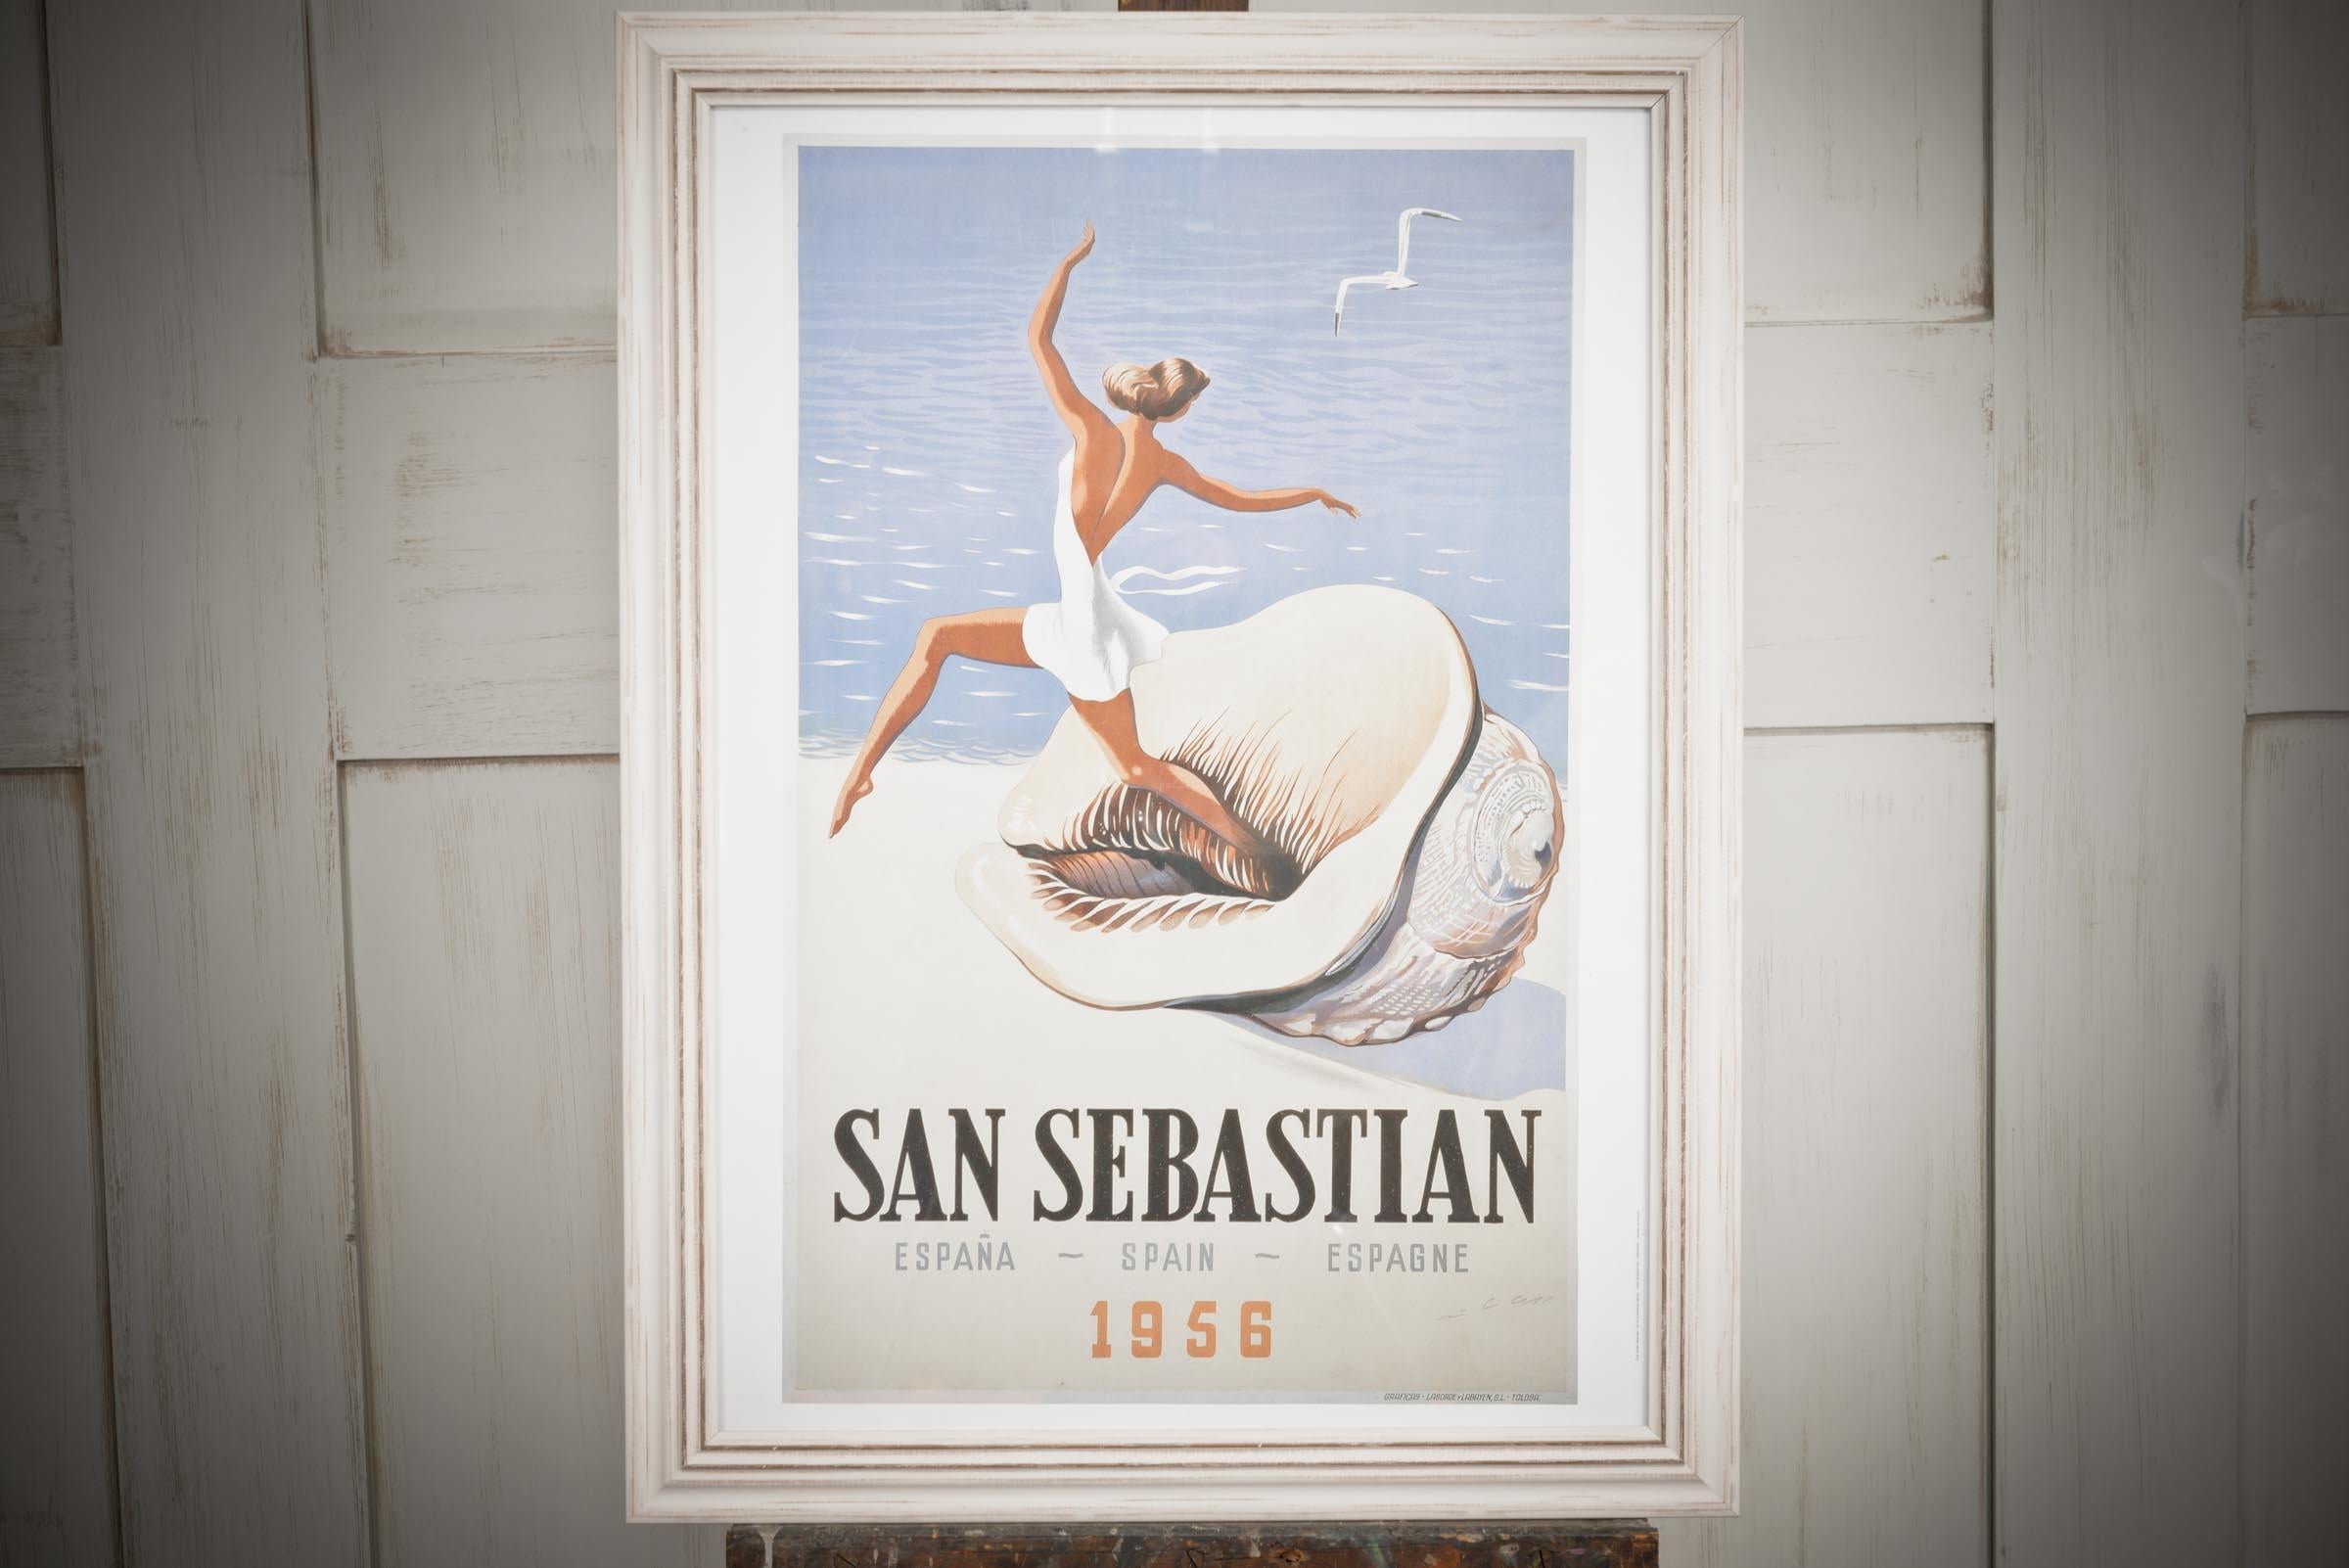 Superbe affiche encadrée datant de 1956 à San Sebastian en Espagne - Une élégante dame dansant sur un coquillage surdimensionné sur les rivages sablonneux de San Sebastian. Ce poster ajouterait de la classe et de l'élégance à n'importe quelle pièce